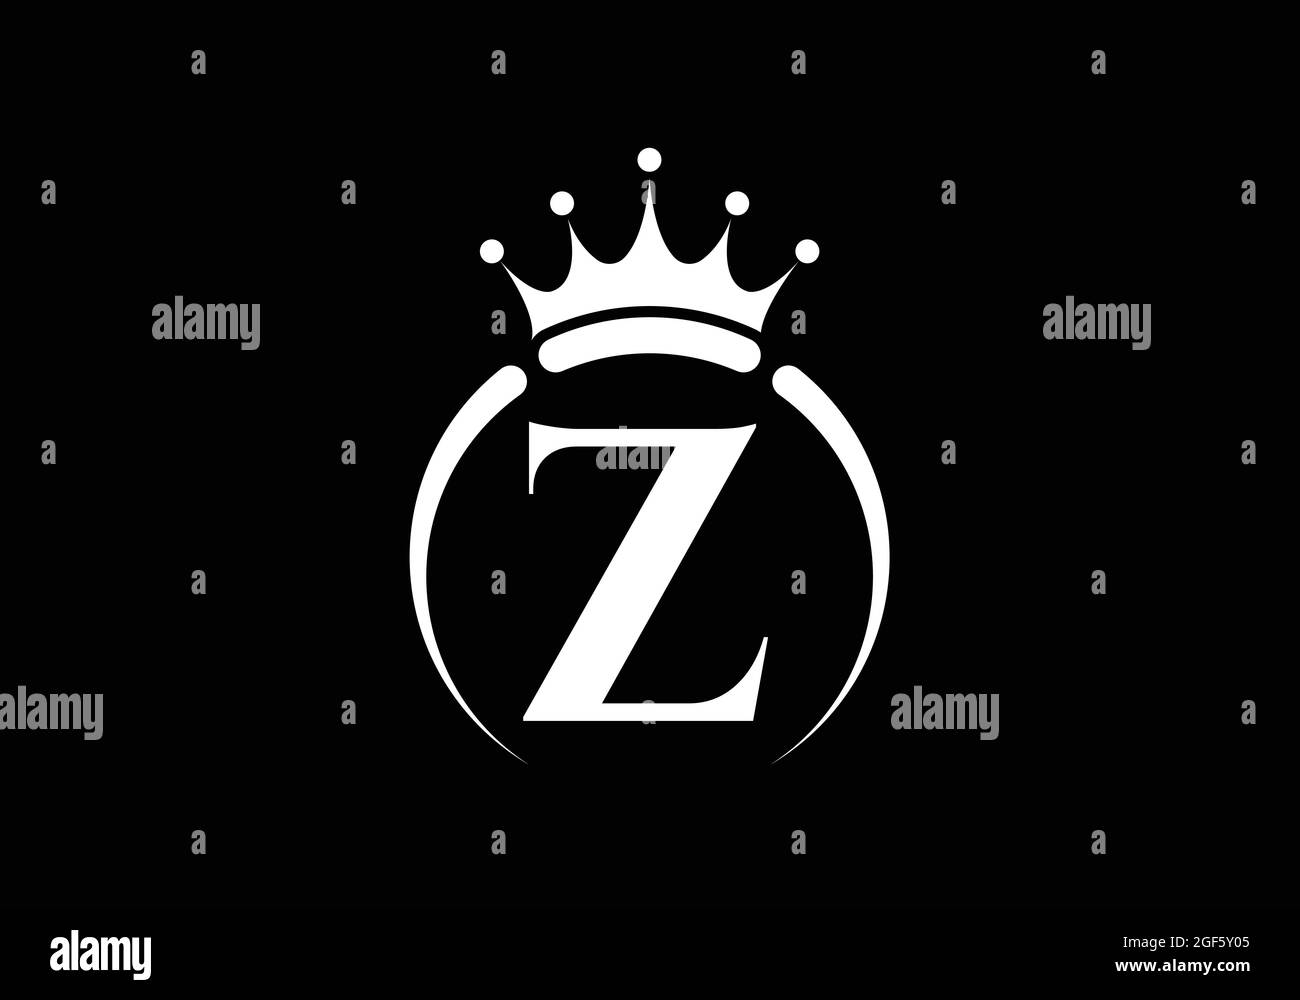 Initiale Z monogramme alphabet avec une couronne. Symbole Royal, King, Queen de luxe. Emblème de police. Affiche de luxe moderne. Illustration vectorielle. Illustration de Vecteur